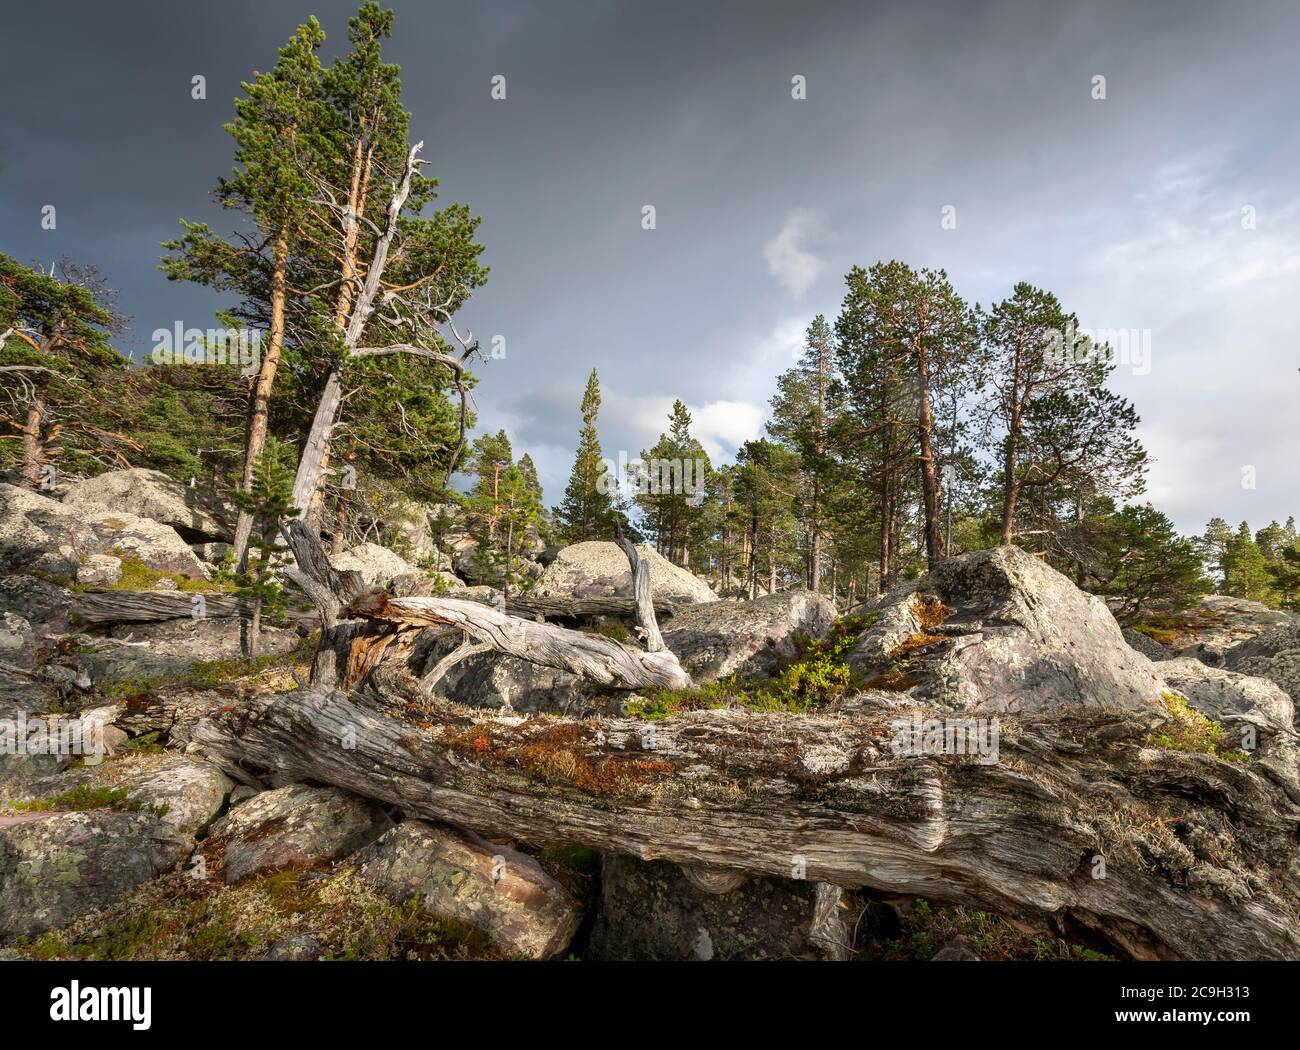 Foresta primordiale nell'area protetta di Laconia, Gaellivare, Norrbottens laen, Svezia Foto Stock